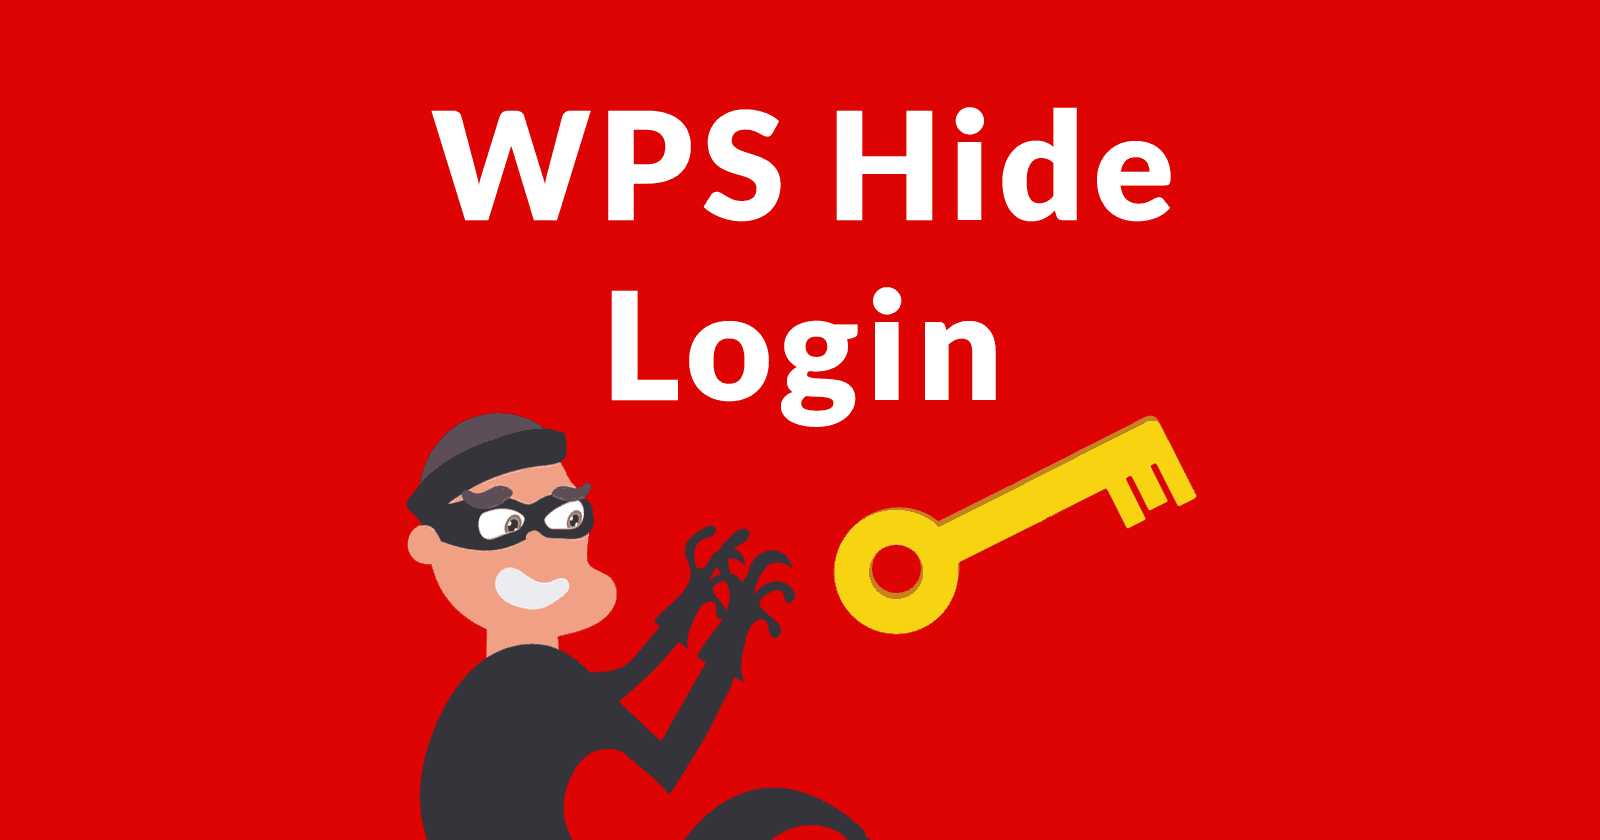 WPS Hide Login Vulnerability